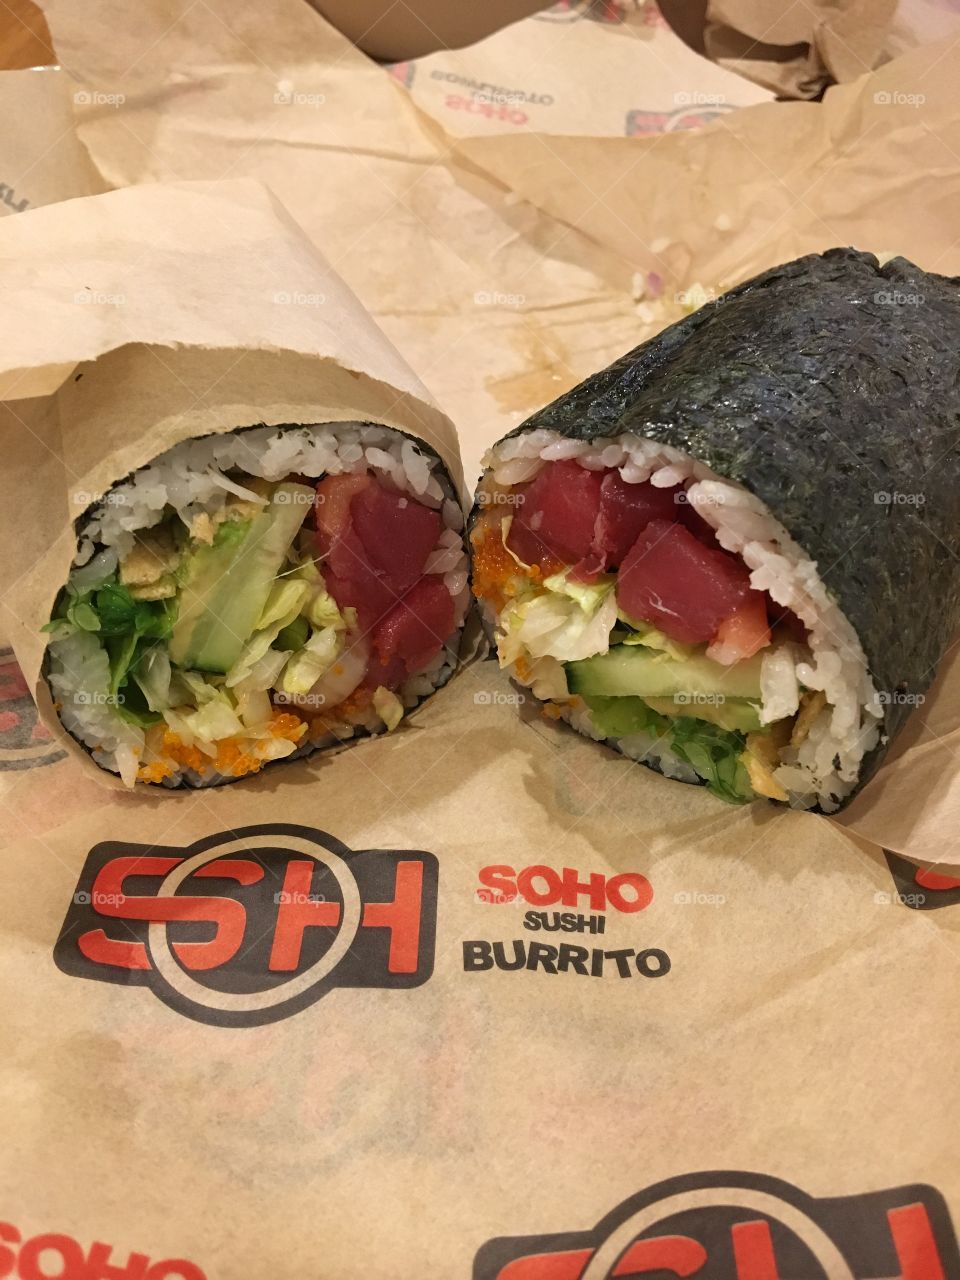 Sushi burrito in Las Vegas. 